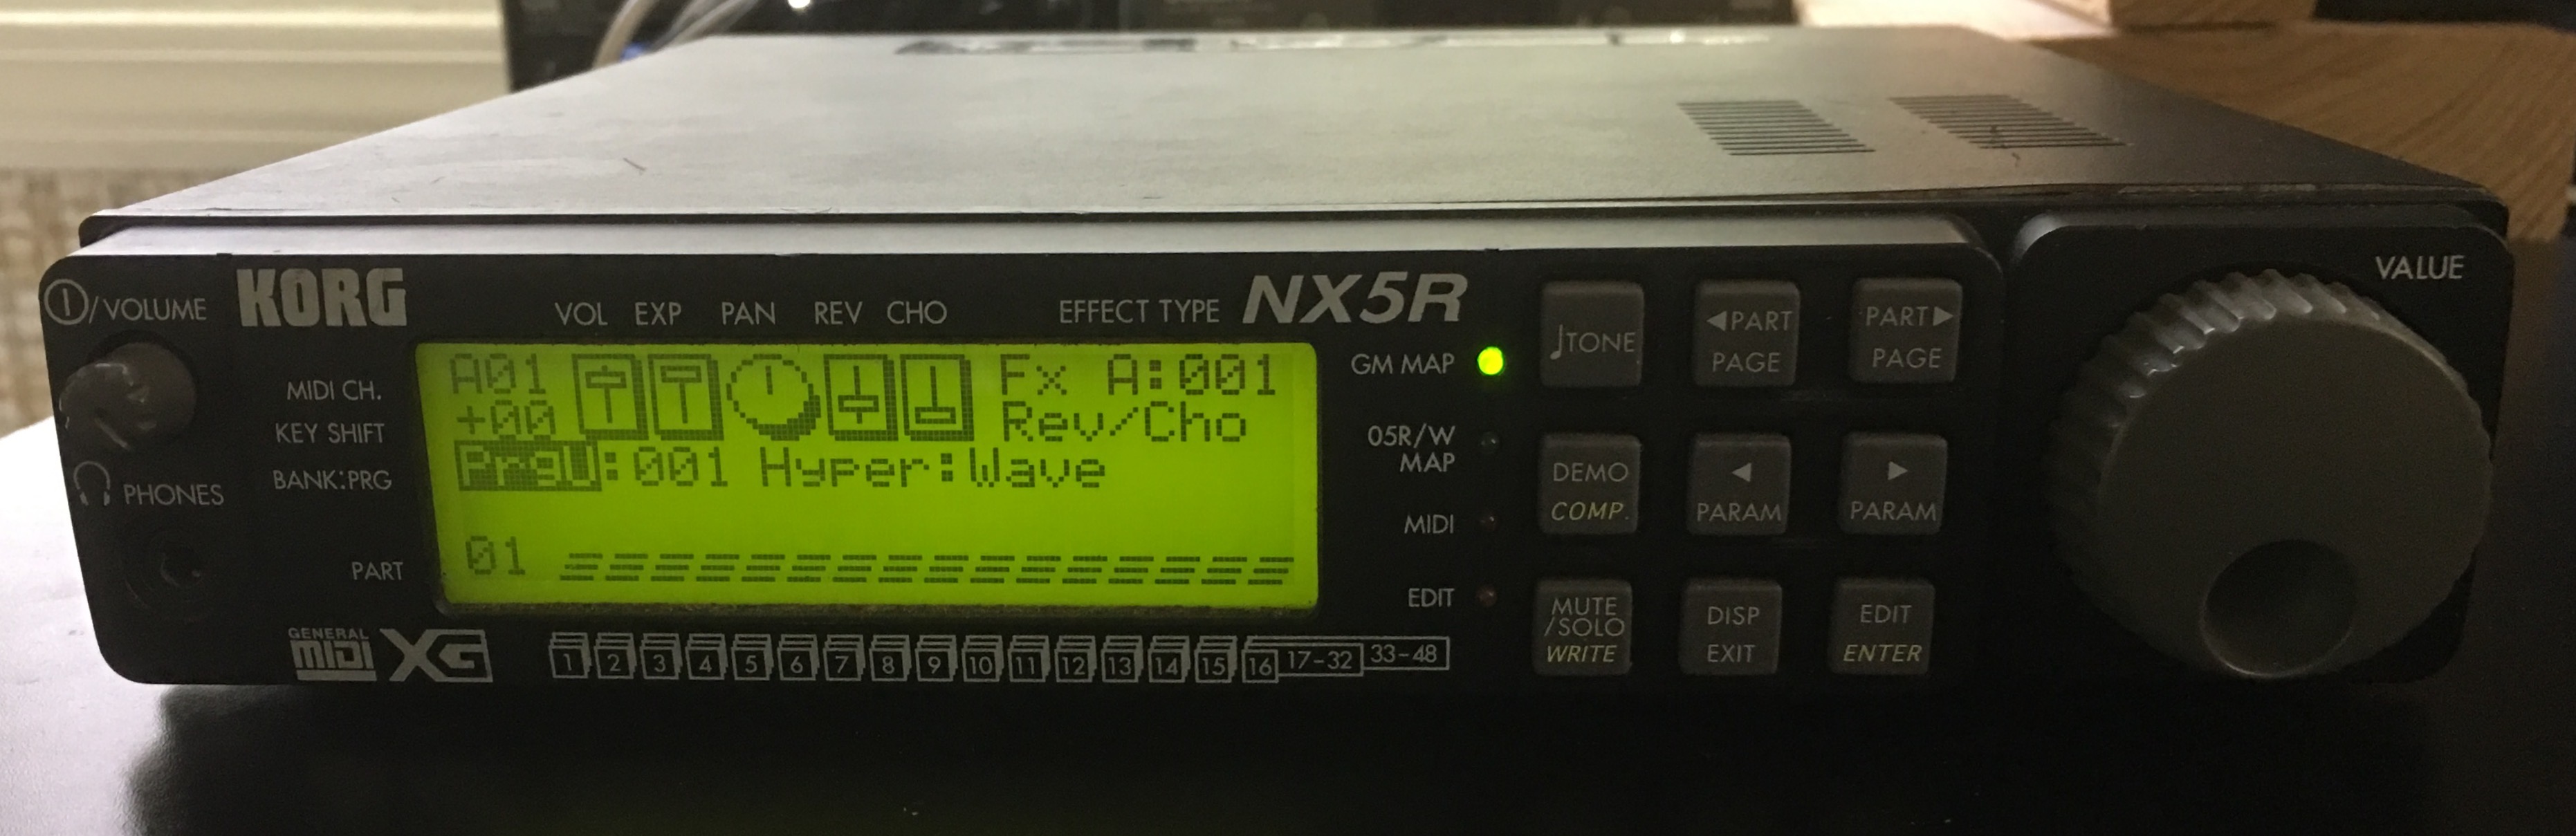 Korg NX5R synthesizer